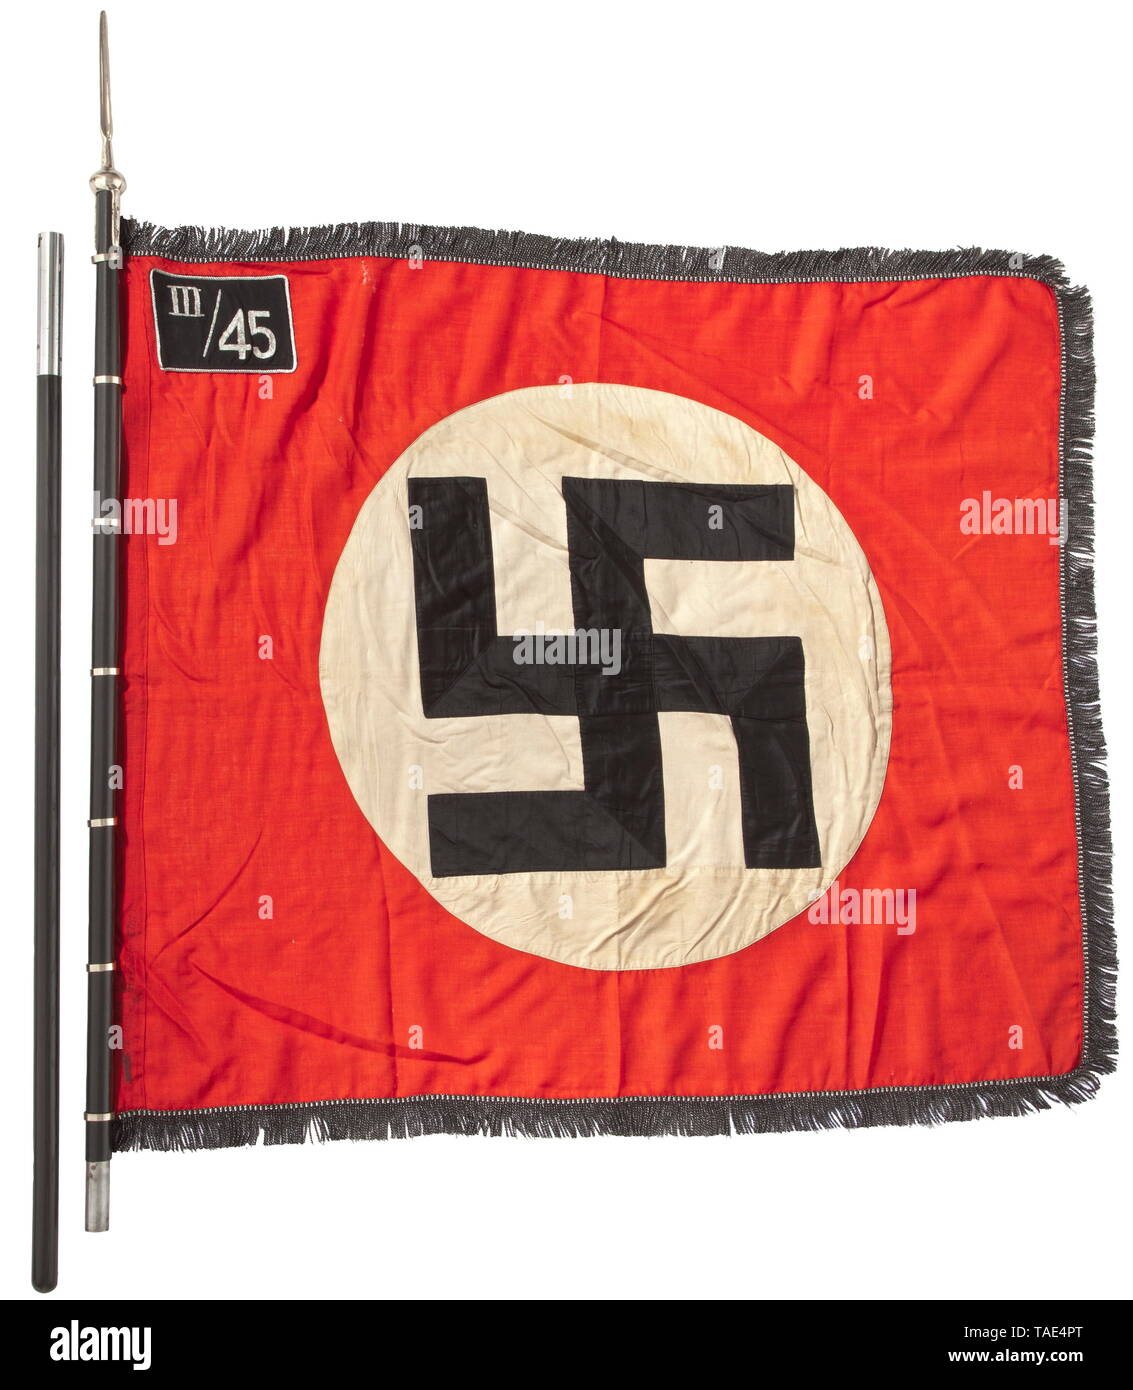 Ein SS-Sturm Flagge von III/45 in Rosenberg/Oberschlesien mit Pol und Finial Rote Fahne Stoff mit schwarz-silbernen Fransen auf drei Seiten, auf beiden Seiten mit einem GENÄHTEN - In weißen Scheibe und eine schräge Hakenkreuz mit schwarzen Flächen in silberne Schnur getrimmt. Silber bestickt" III/45' für die 3 Sturmbann (Rosenberg O. S) von 45 SS-Standarte (Neiße O.S.). Sieben direkt aufgenähten Vernickelt standard Ringe. Lieferung stanzen, kleinen Schönheitsfehlern. Abmessungen Ca. 120 x 145 cm. Zweiteilige schwarze hölzerne Flagstaff. Vernickelt finial in Form einer Lanze Tipp, Gelocht' RZM M 3/39/40, Editorial-Use - Nur Stockfoto